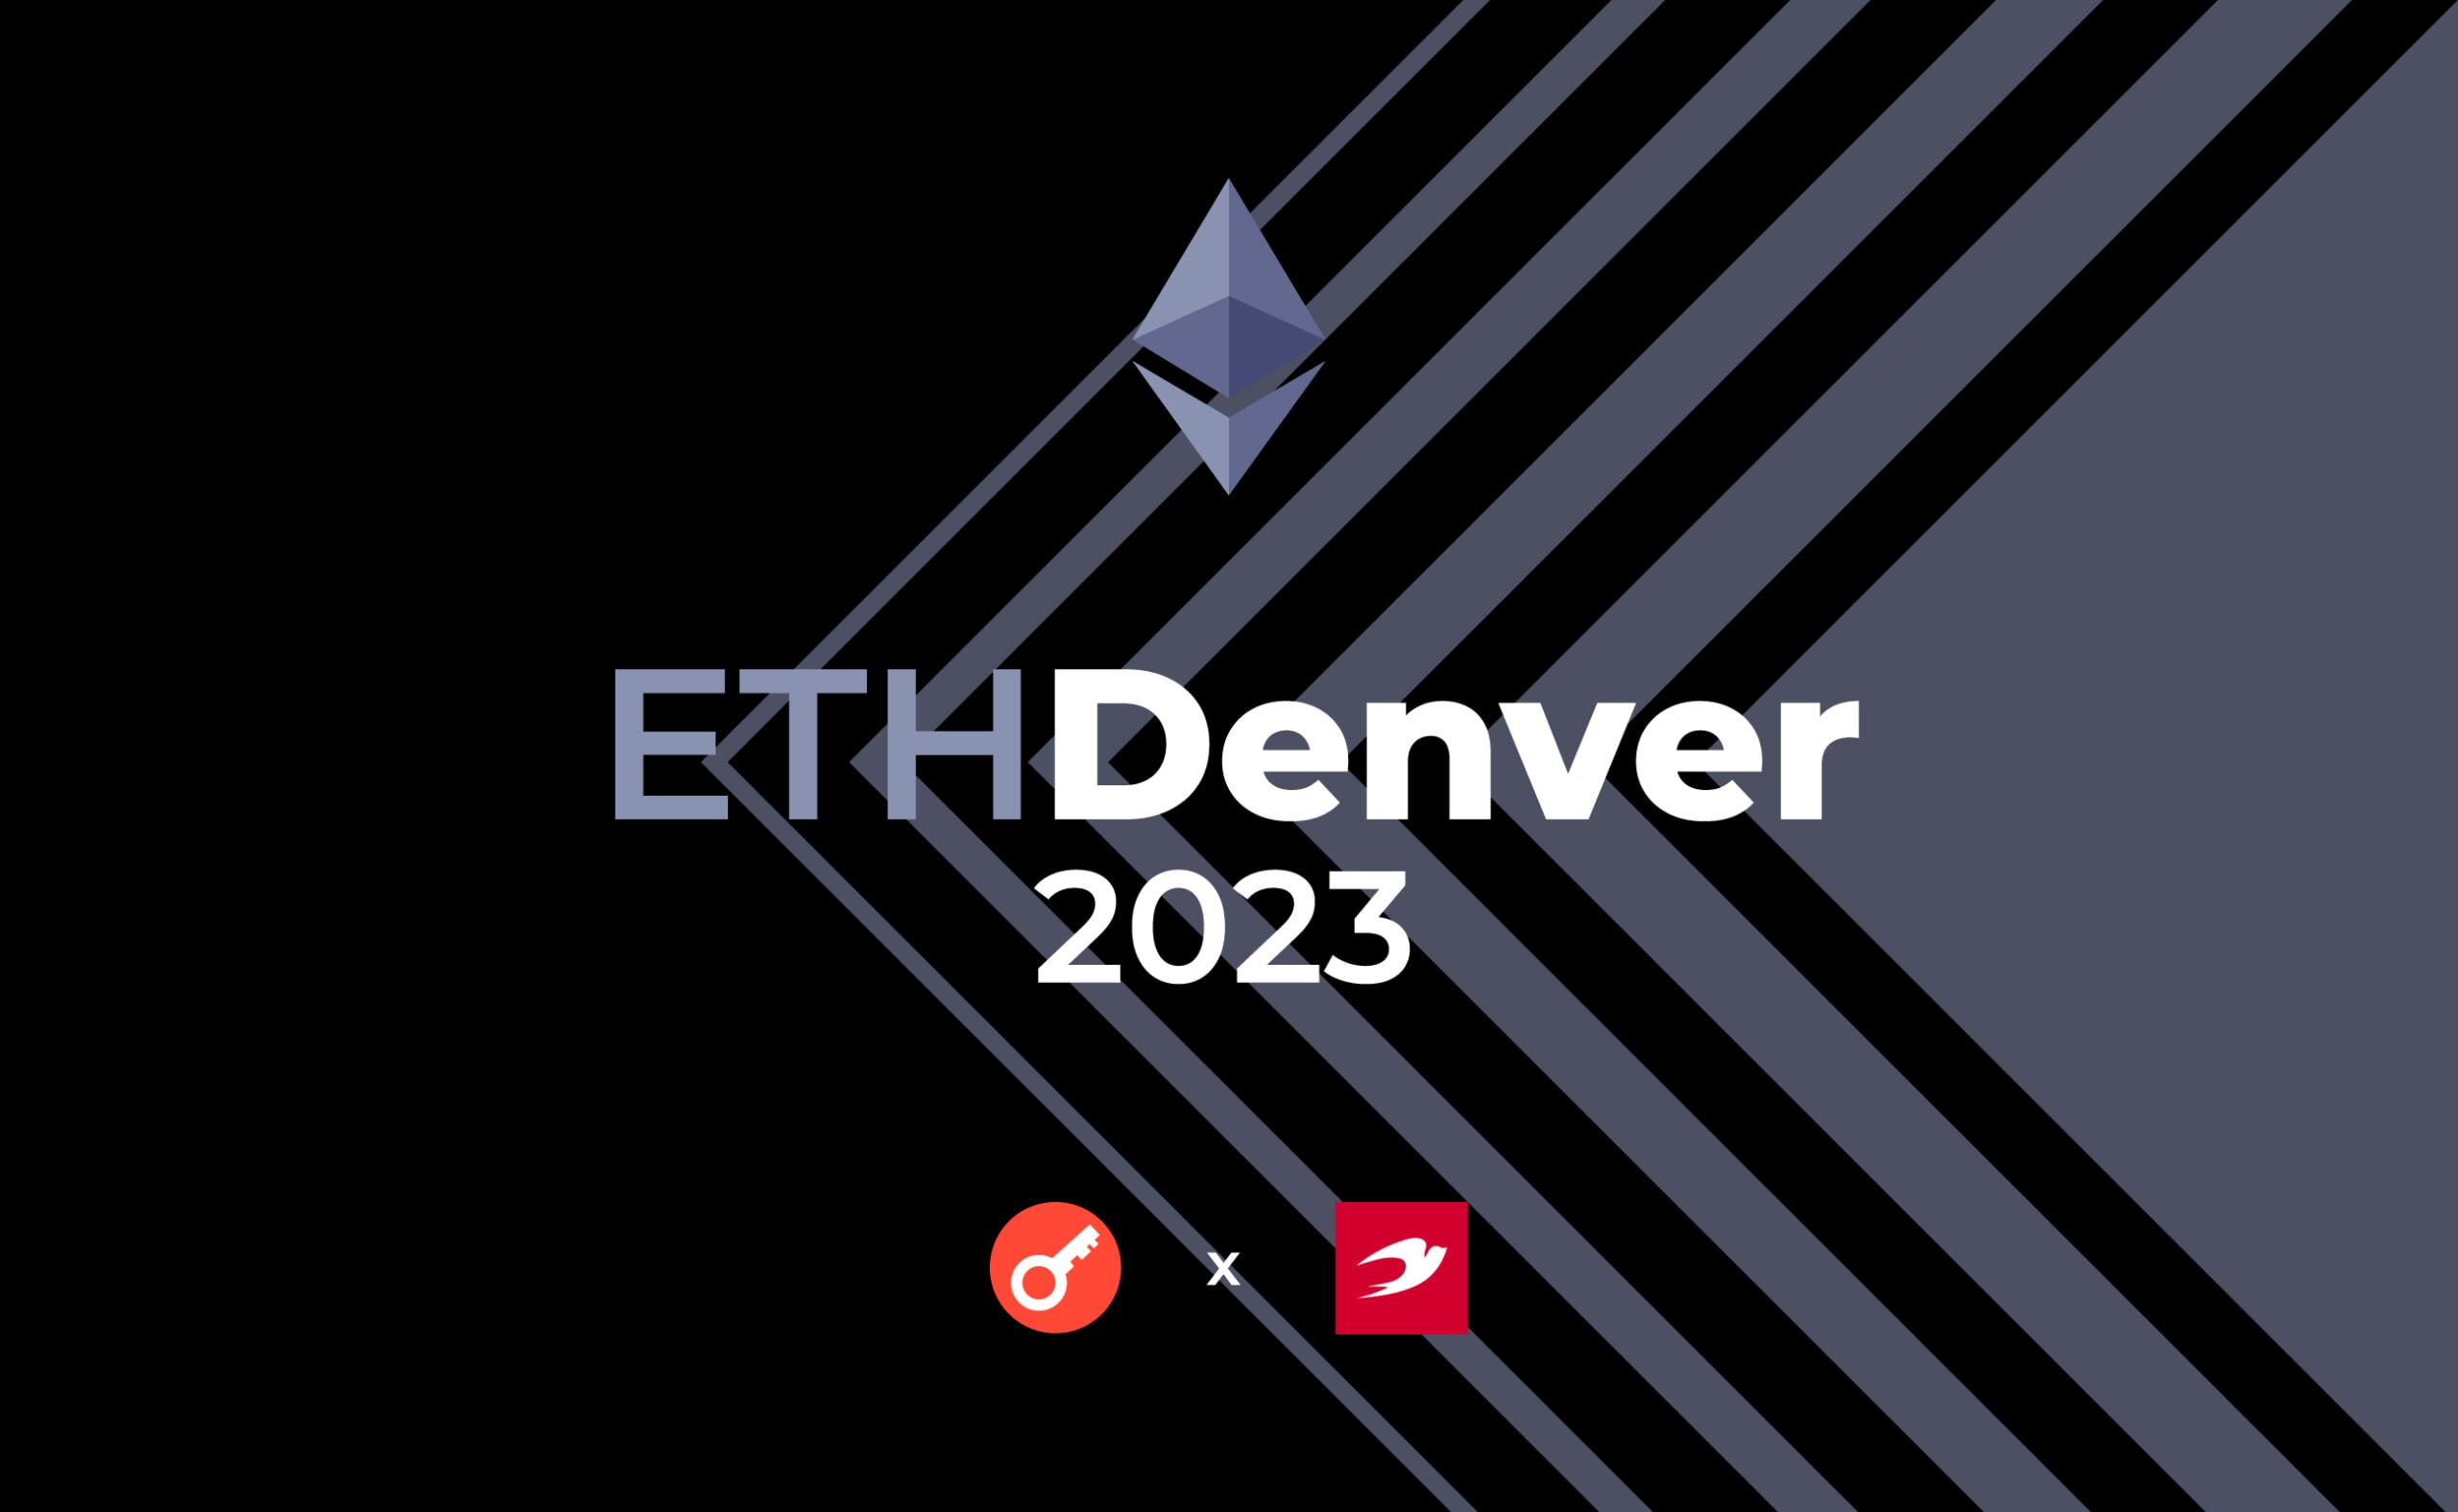 Сьогодні стартує марафон ETHDenver 2023 – культовий фестиваль для прихильників Ethereum. Головний колаж новини.